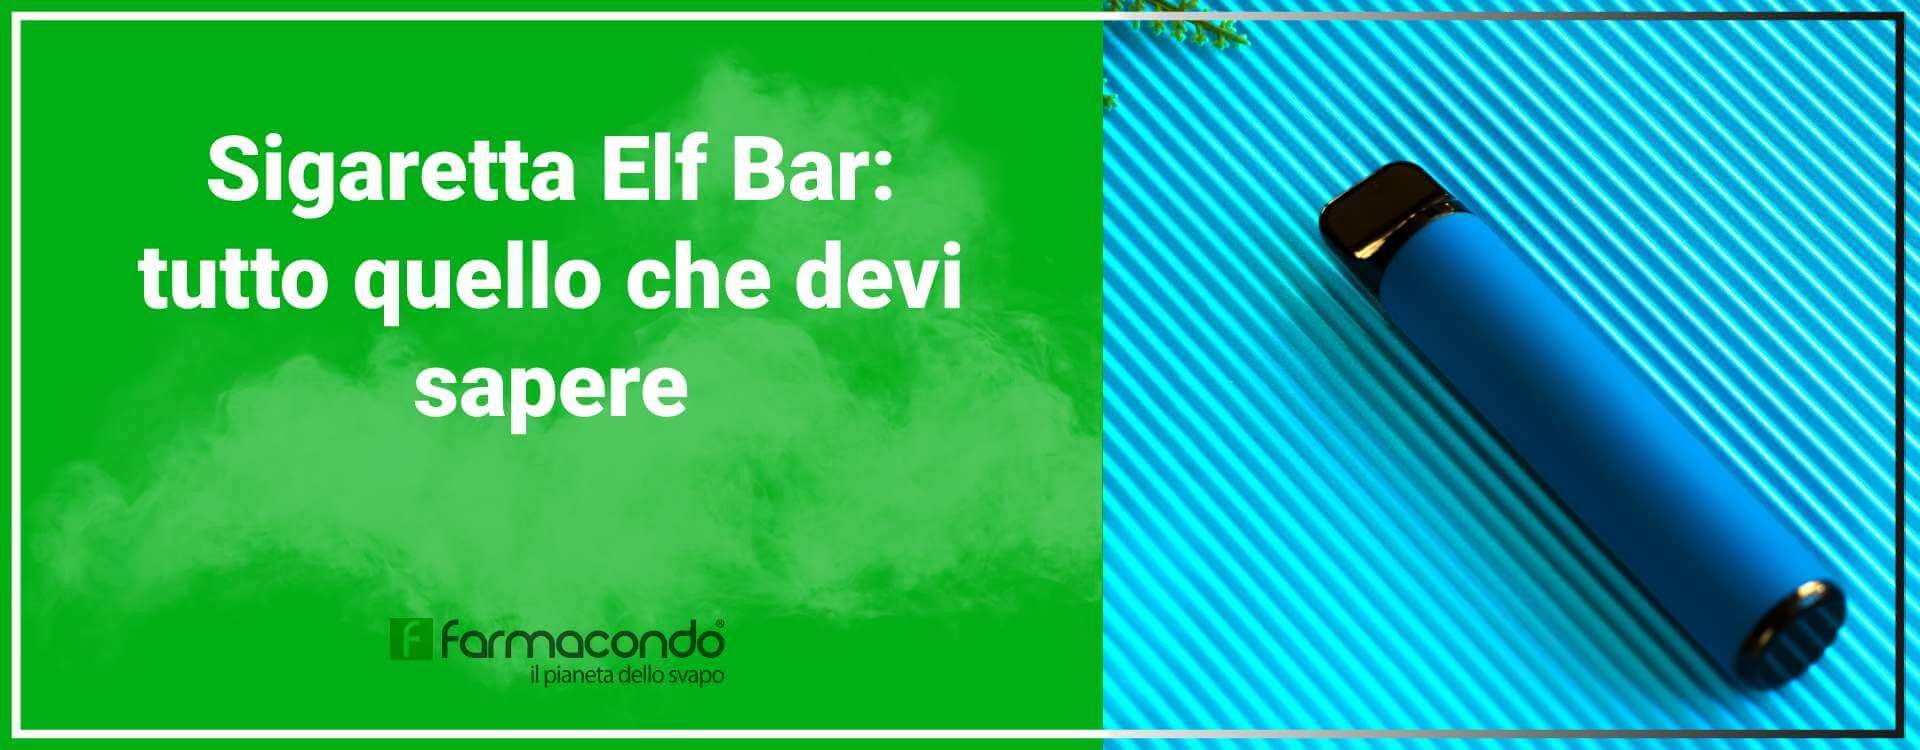 Sigaretta usa e getta Elf Bar: cosa contiene e come si fuma